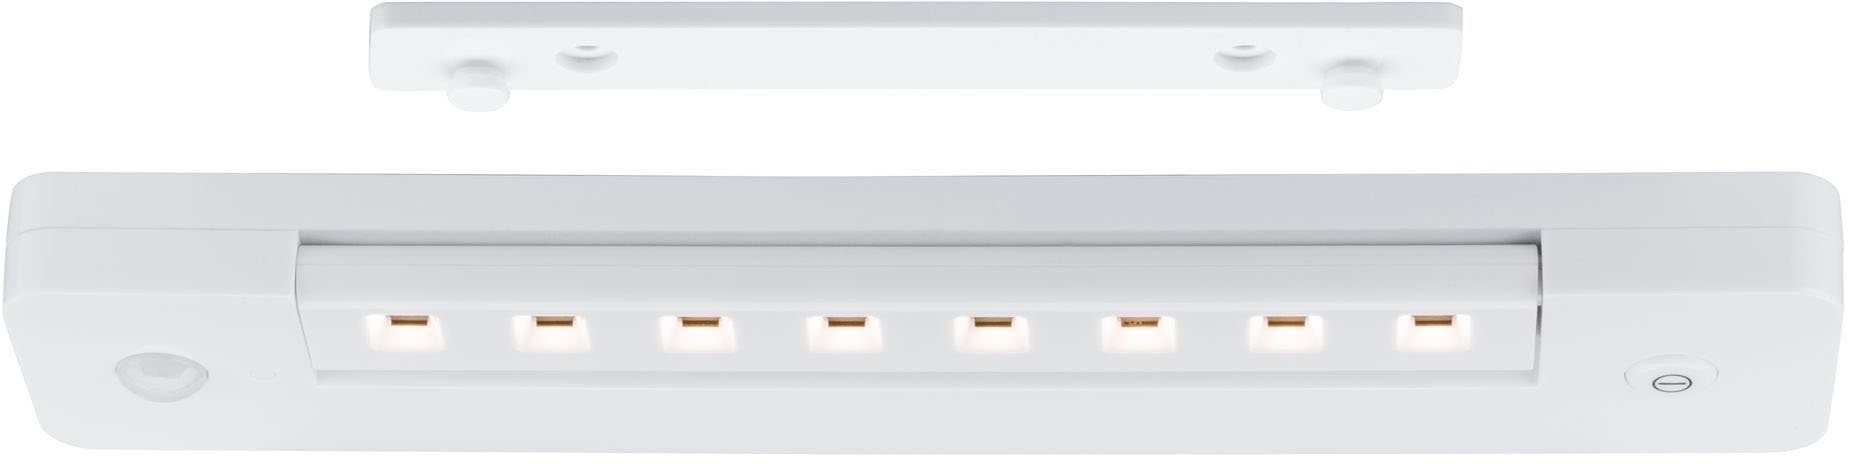 fest Lichtleiste, LED Schalter Paulmann An/Aus/Dimmen&Bewegungsmelder integriert, Warmweiß, LED LEDSmartLightbatteriebetrieben+